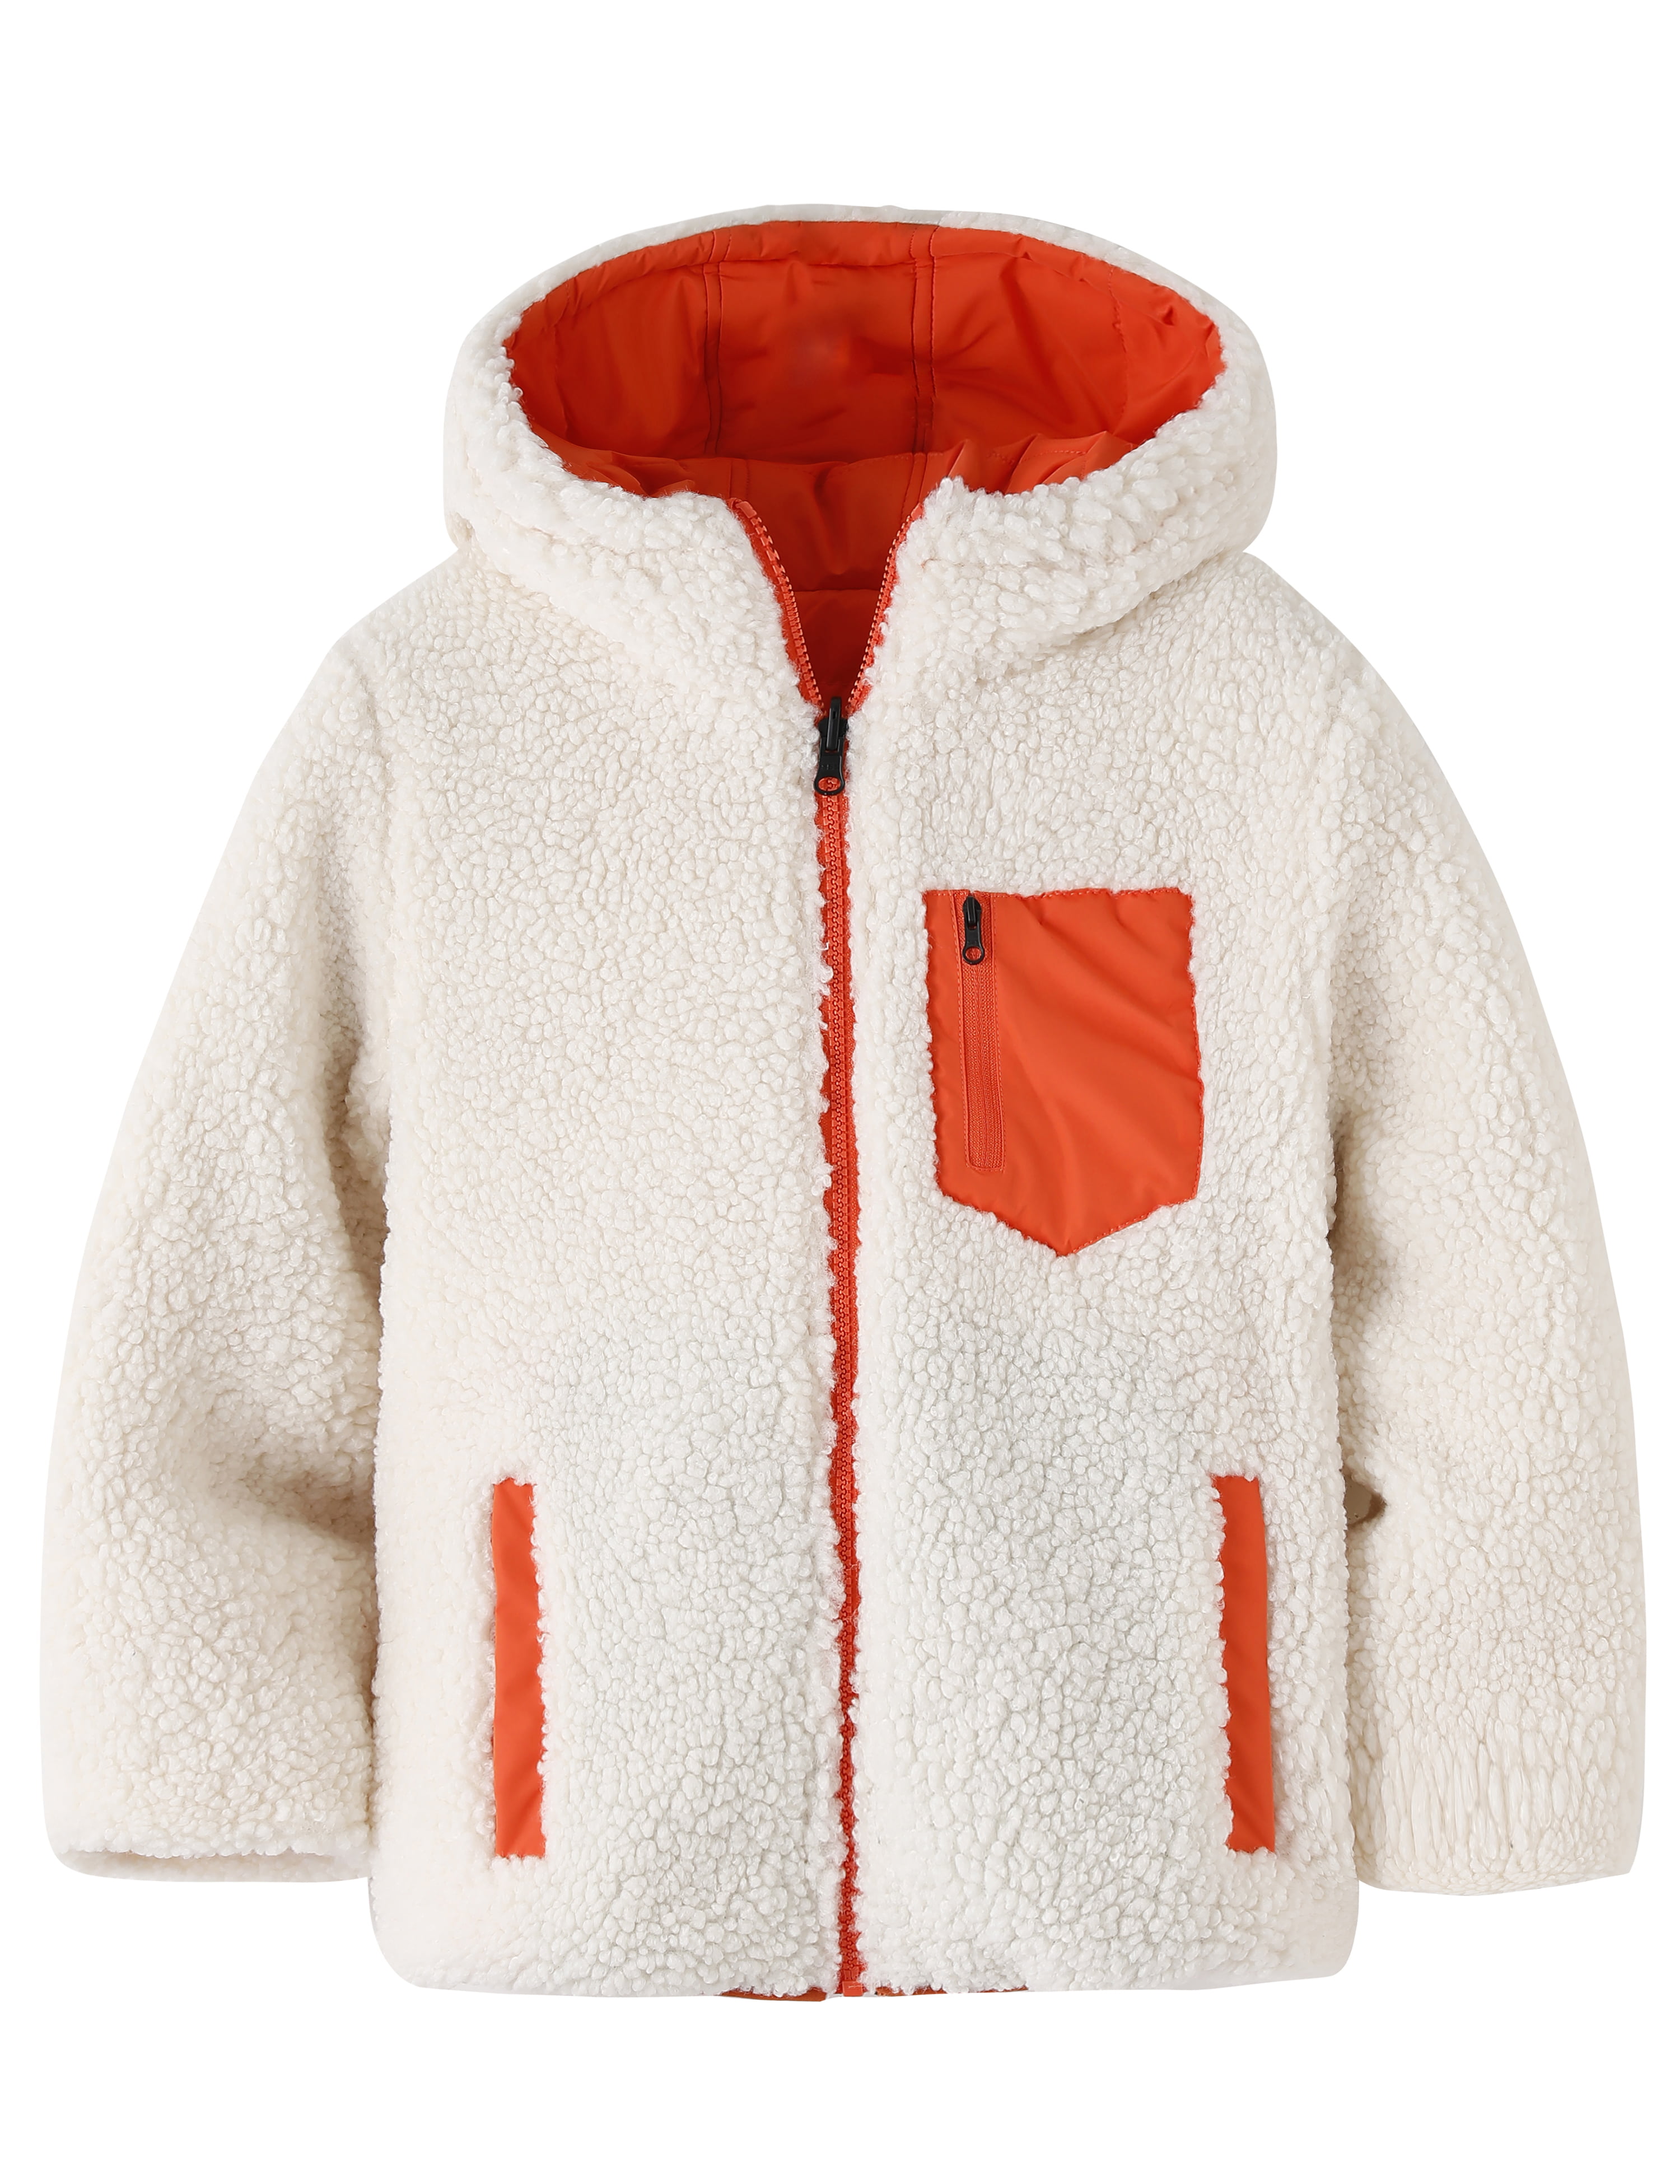 Wantdo Mens Waterproof Fleece Jacket Running Jacket Windproof Thicken Warm Coat